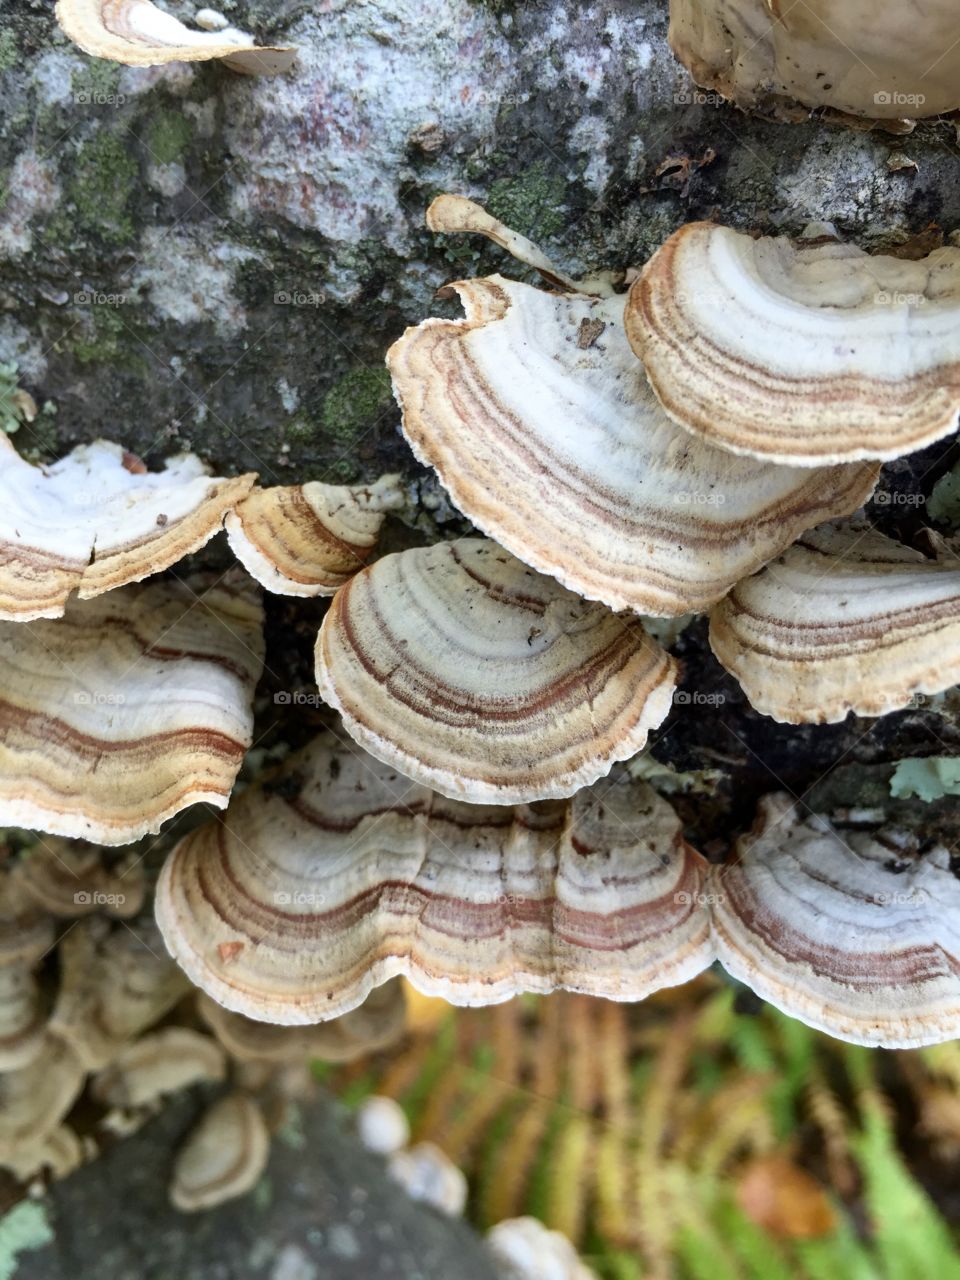 Textured fungi